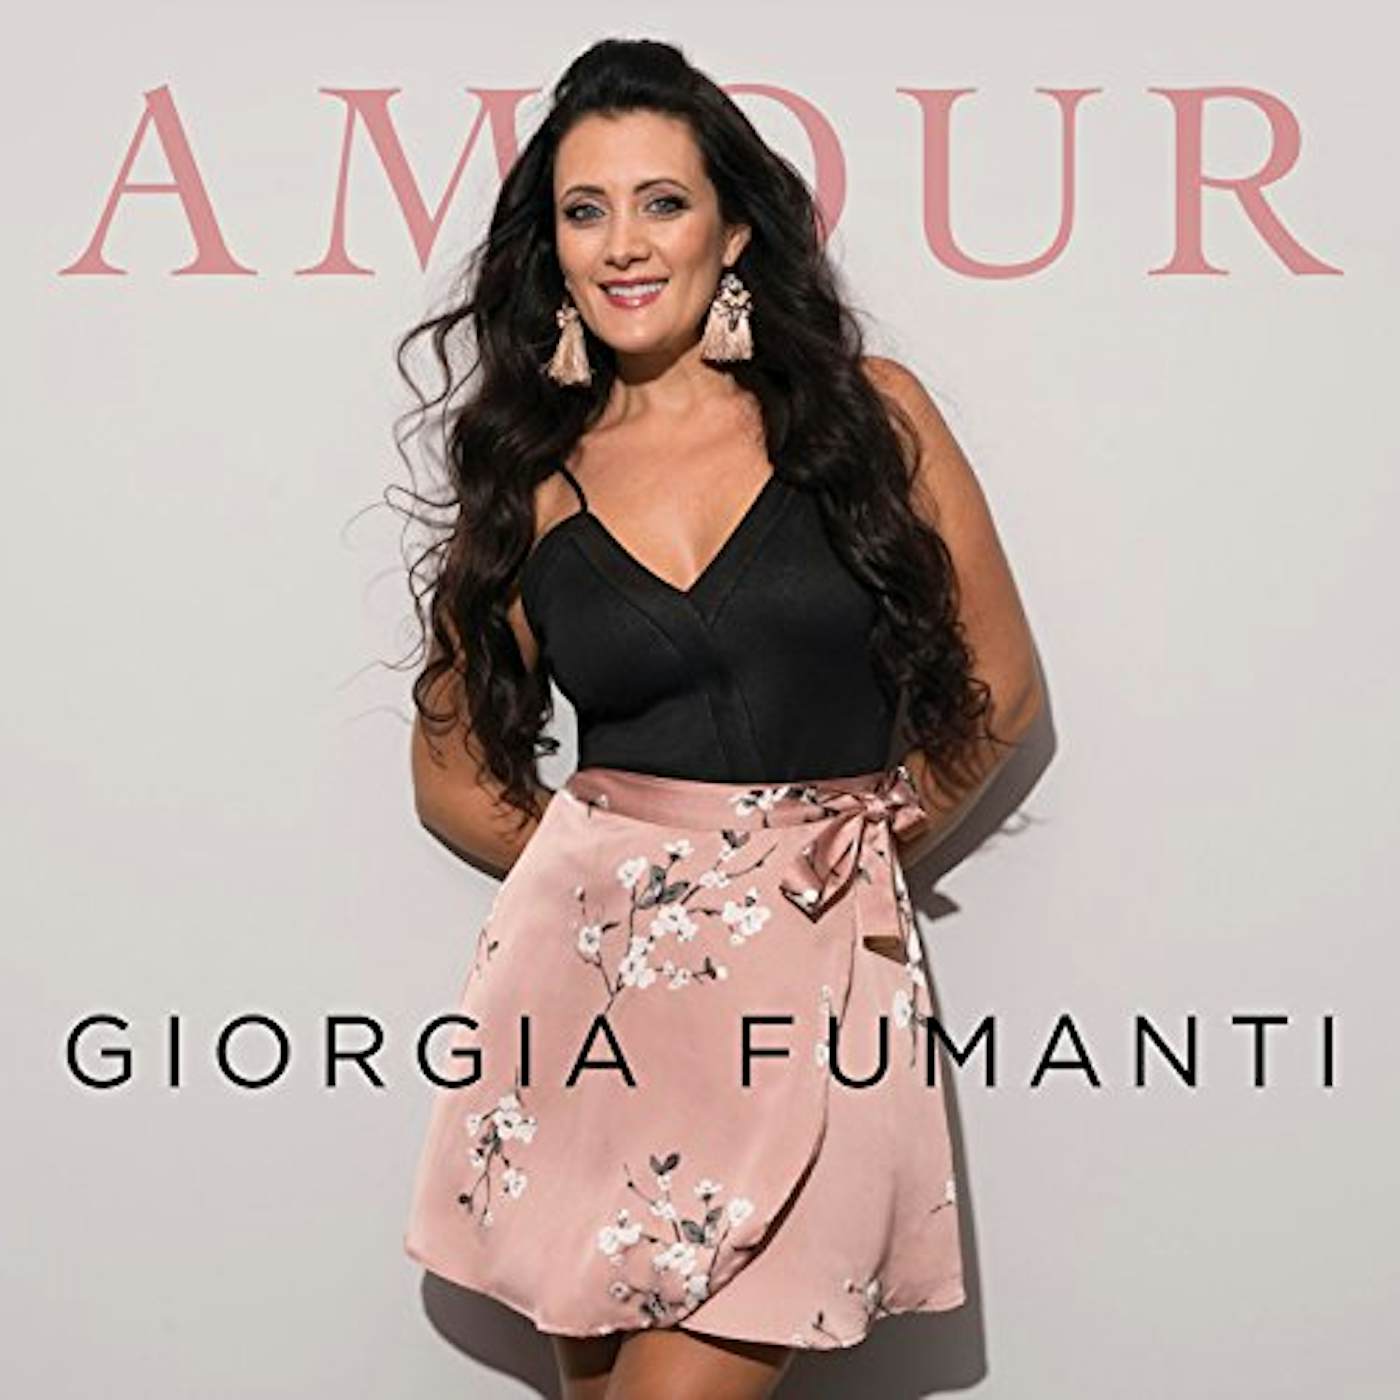 Giorgia Fumanti AMOUR CD